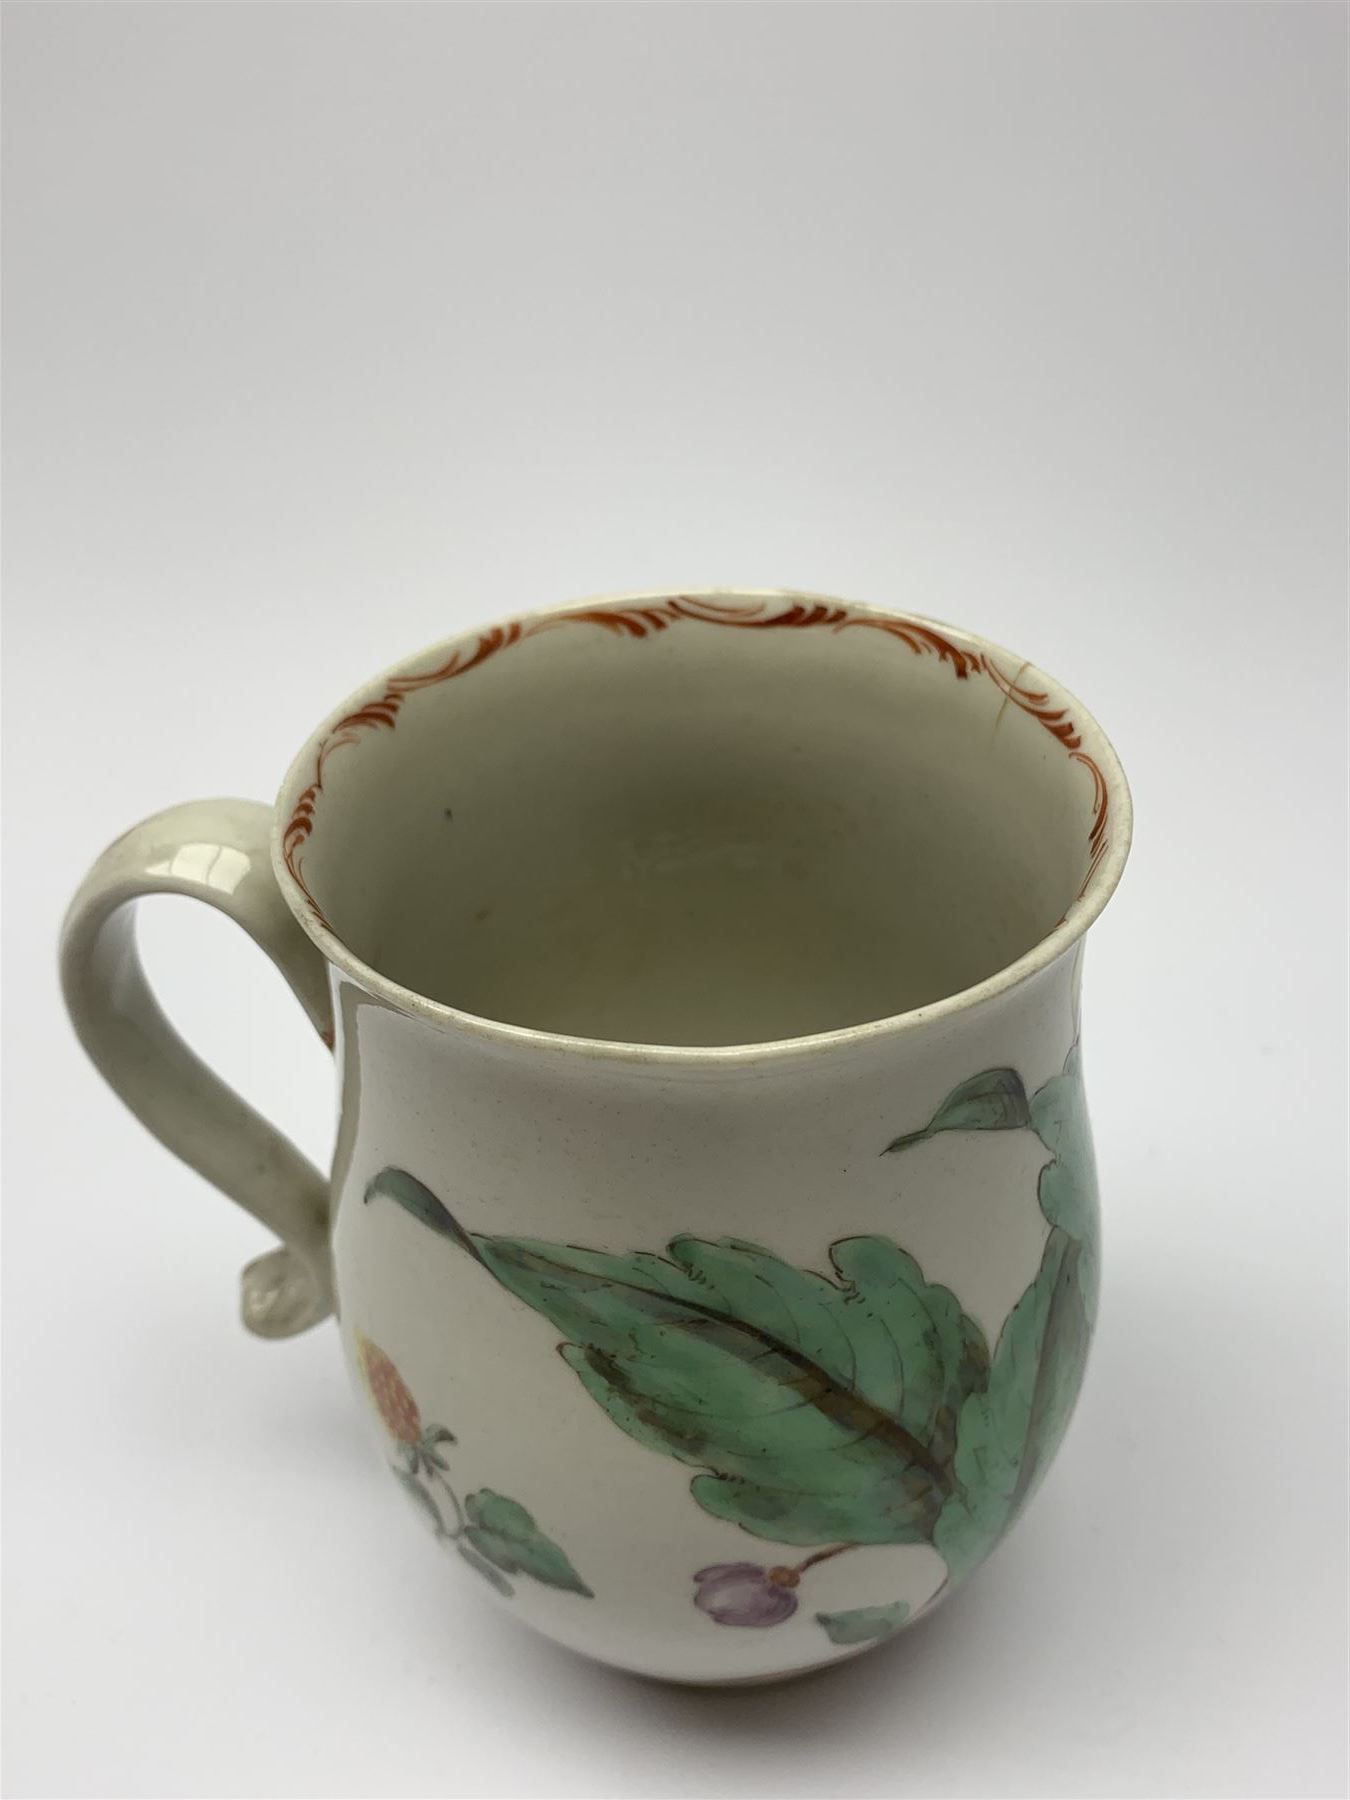 18th century porcelain mug - Image 4 of 8